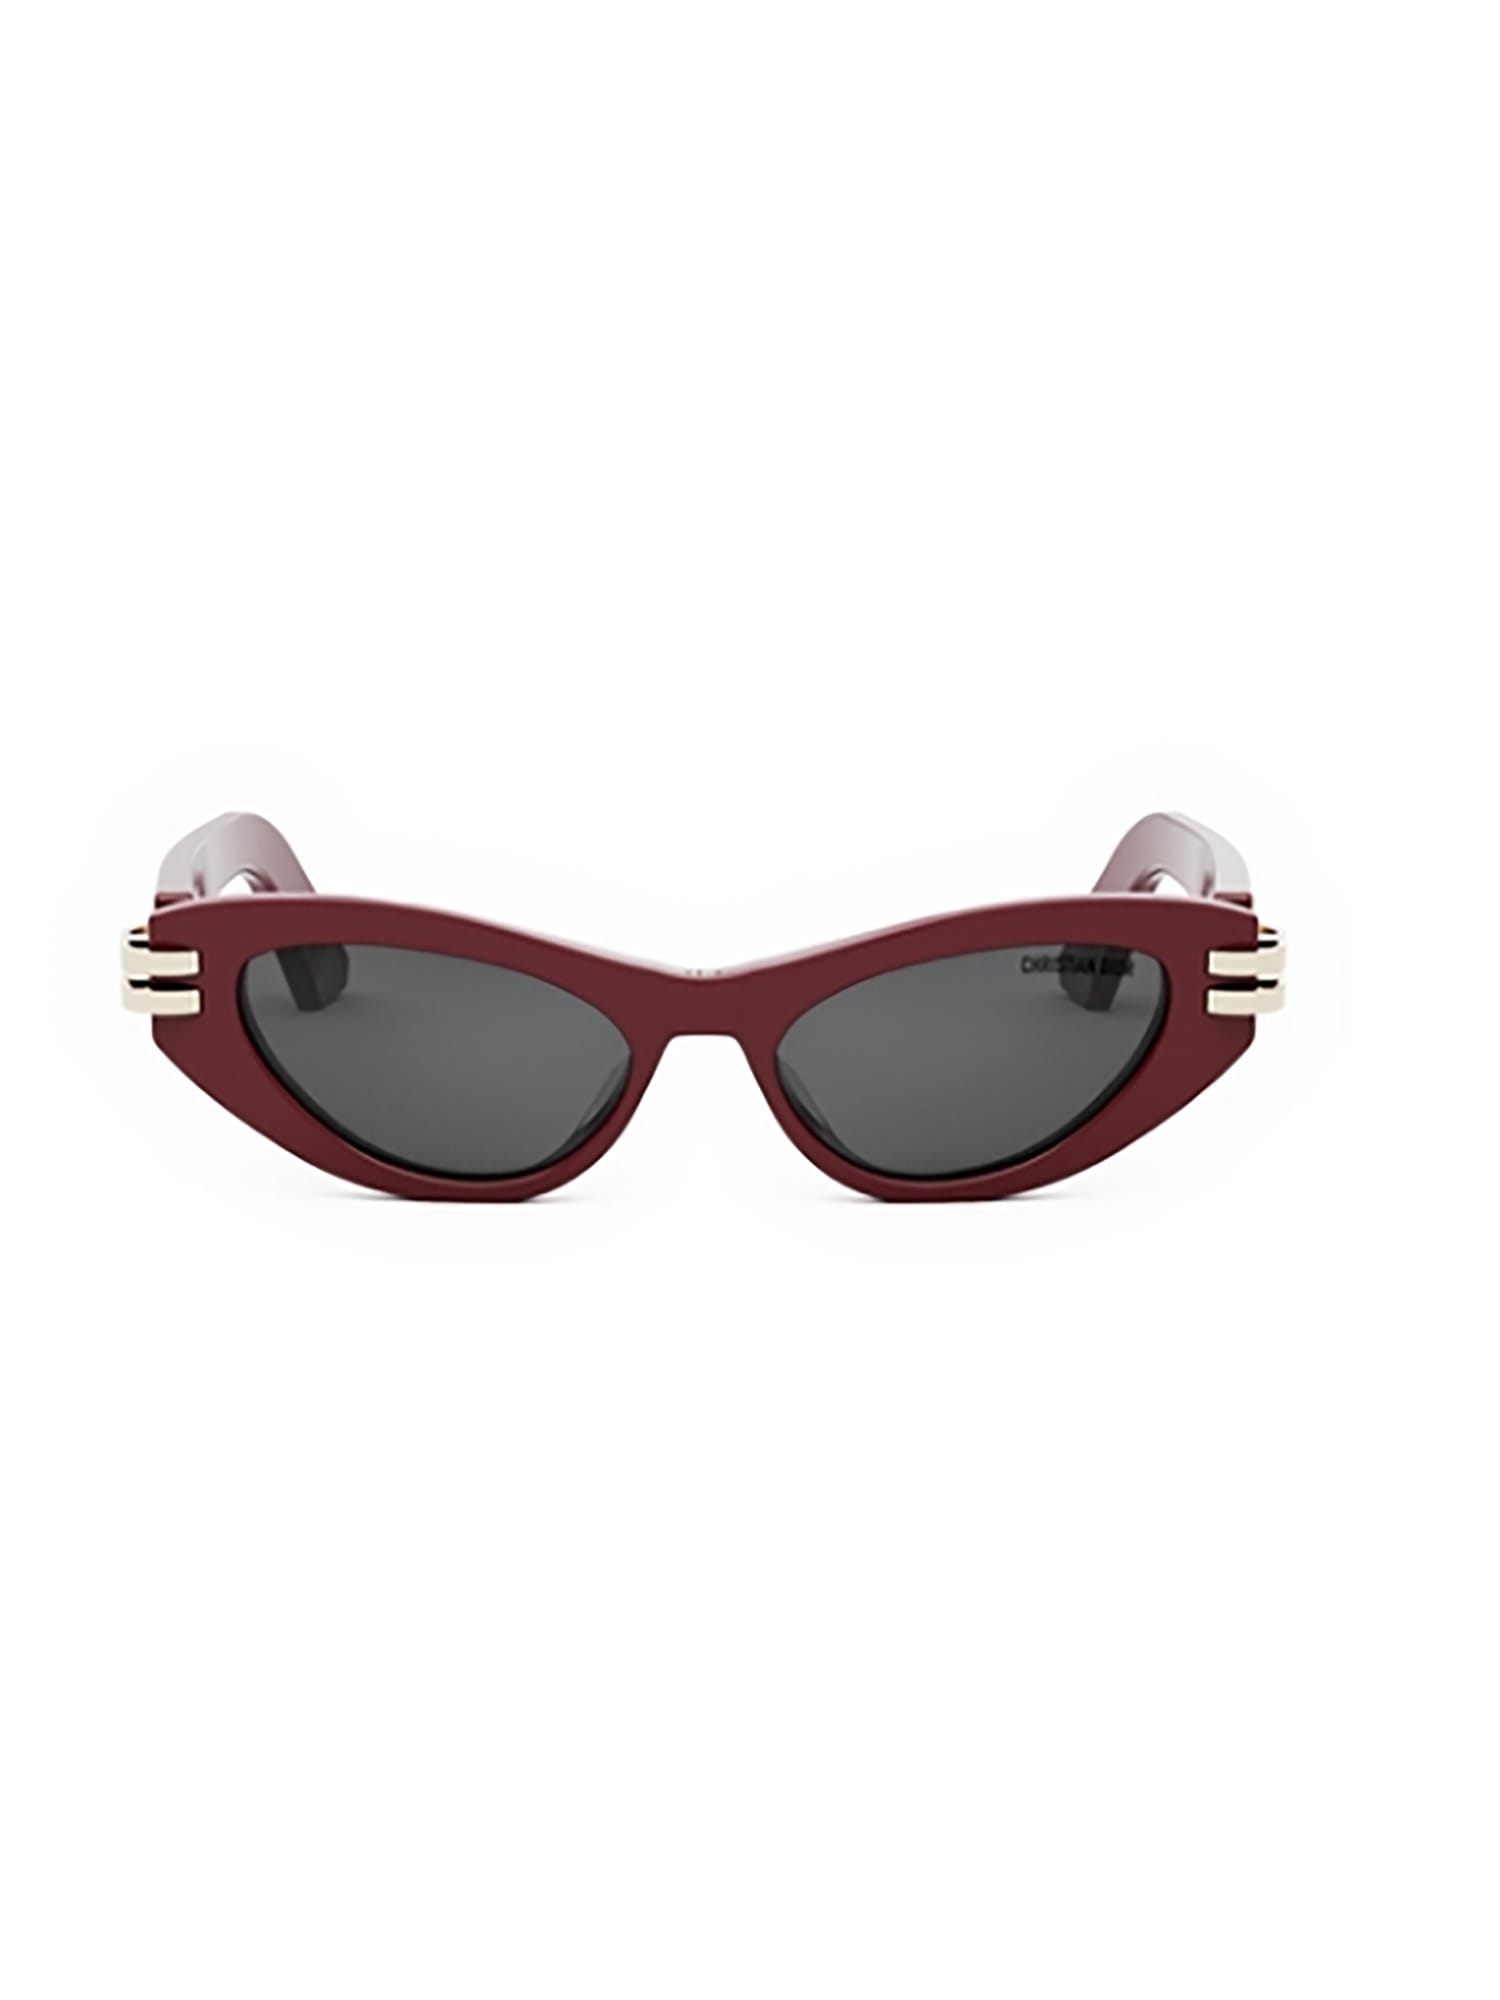 Dior C B1u Sunglasses In Burgundy